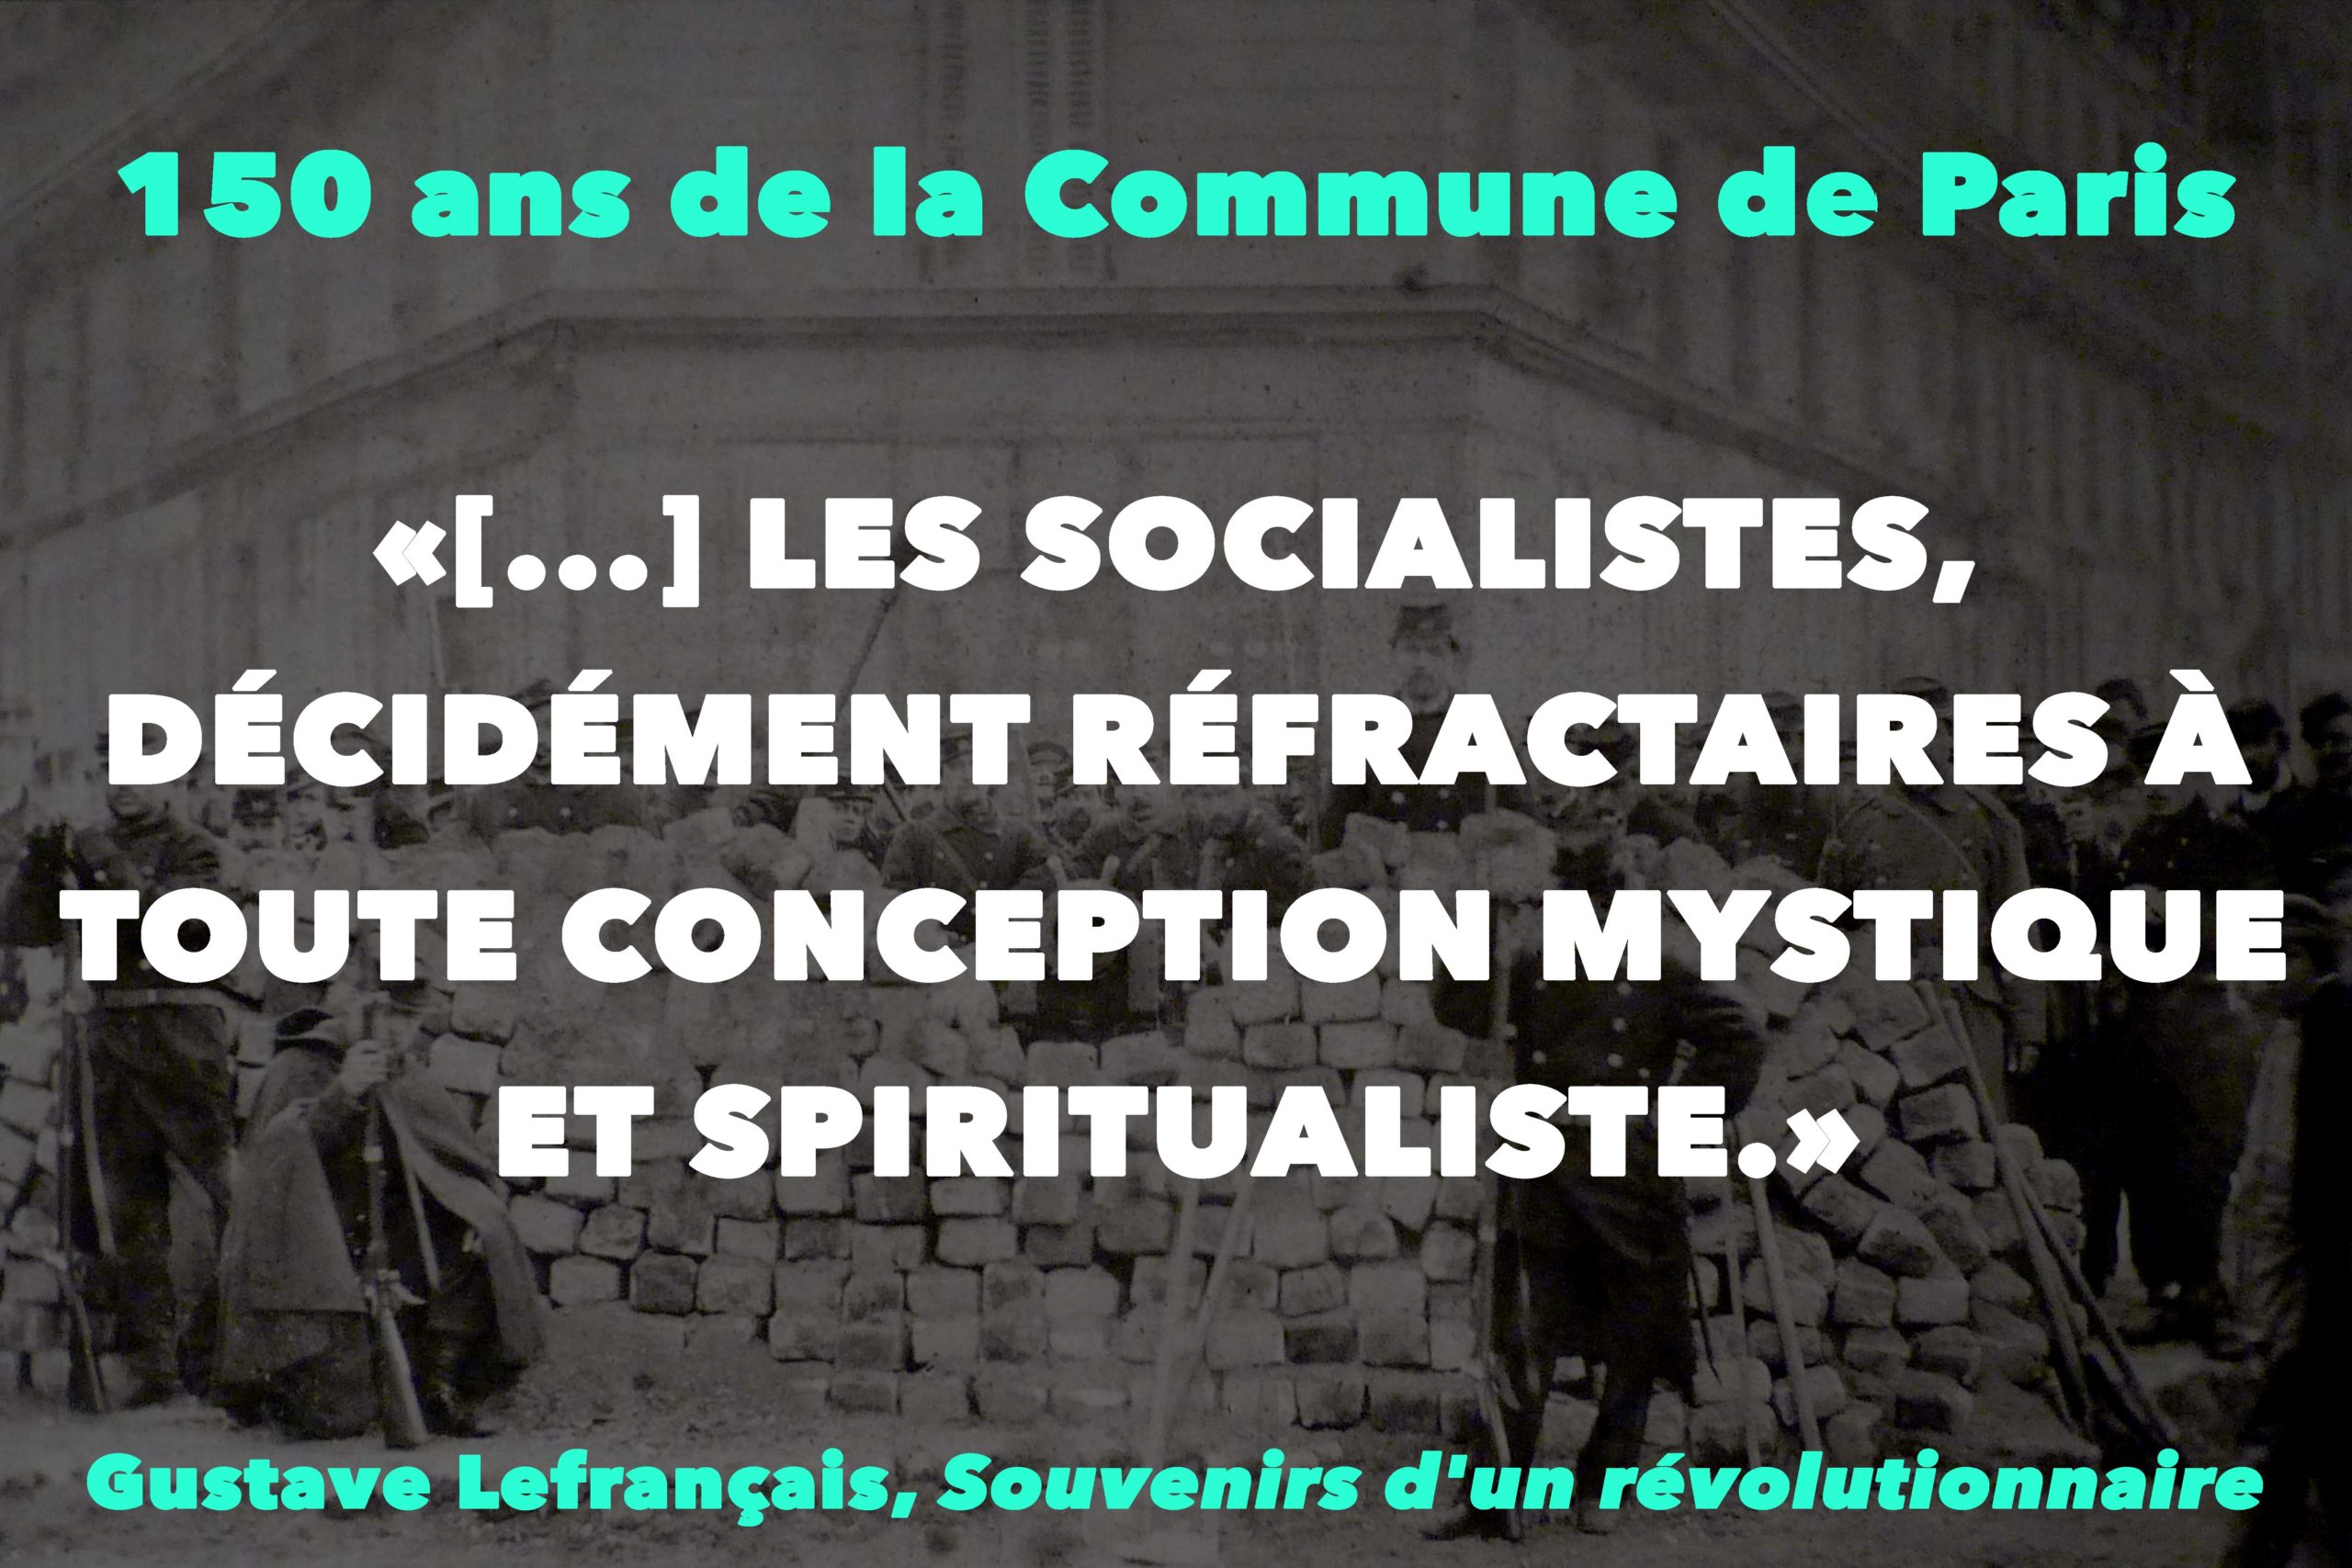 “[…] LES SOCIALISTES, DÉCIDÉMENT RÉFRACTAIRES À TOUTE CONCEPTION MYSTIQUE ET SPIRITUALISTE.”